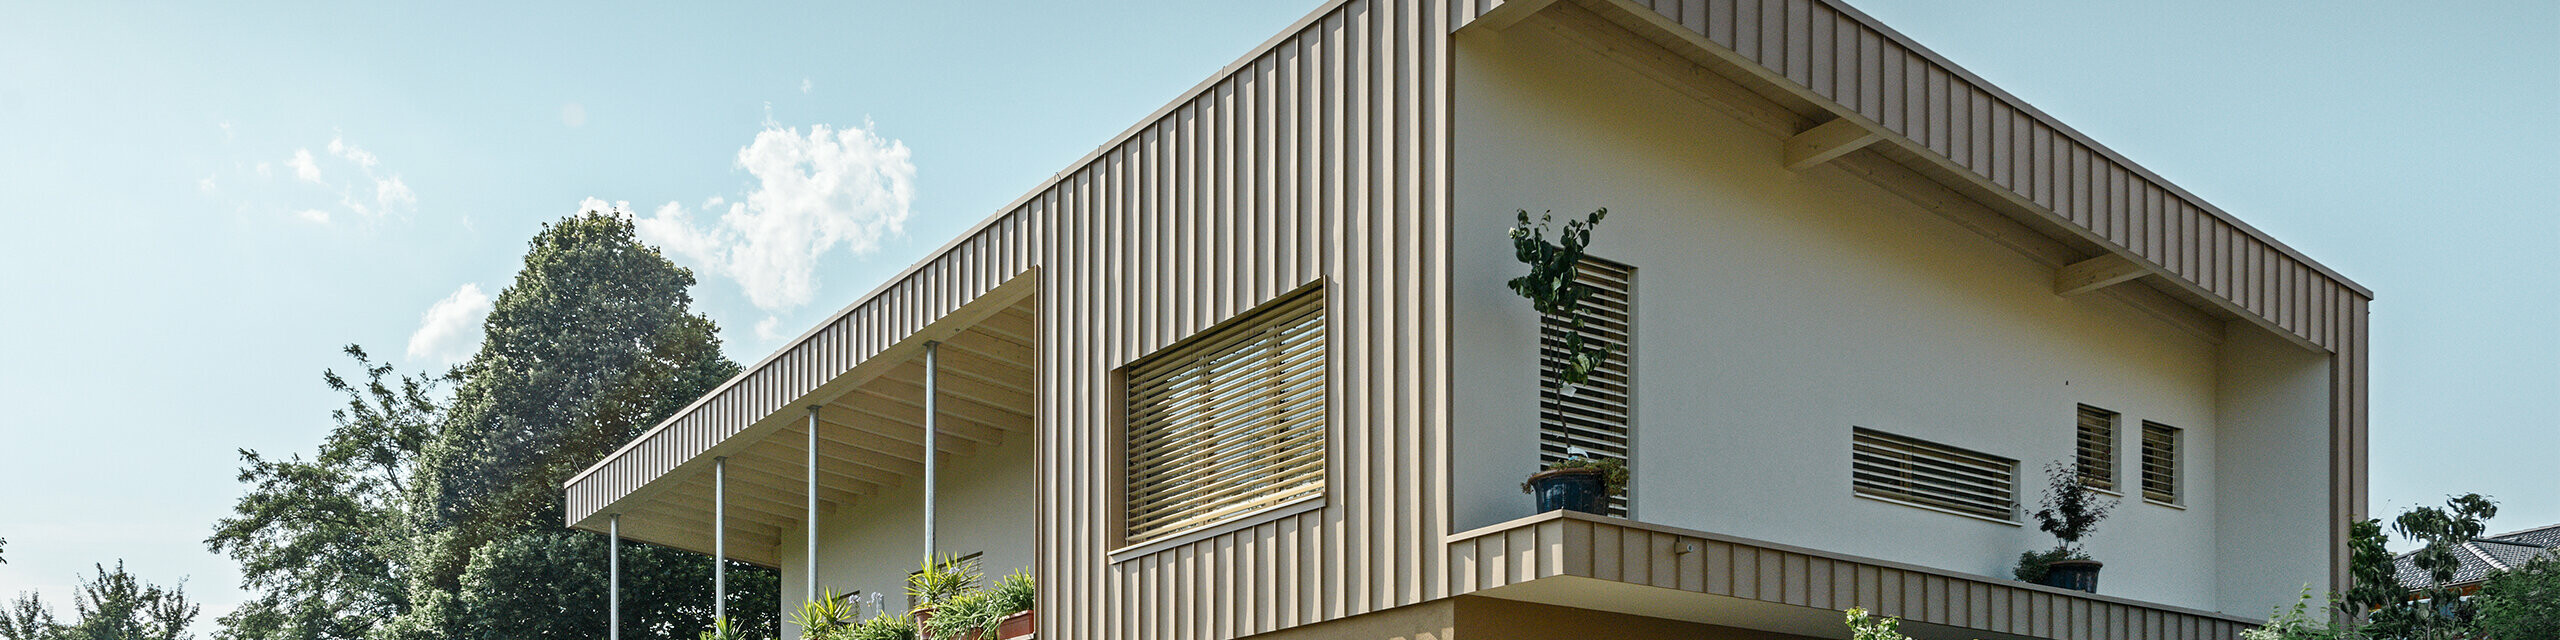 Modernes Einfamilienhaus eingedeckt mit PREFA Prefalz Fassadenelementen